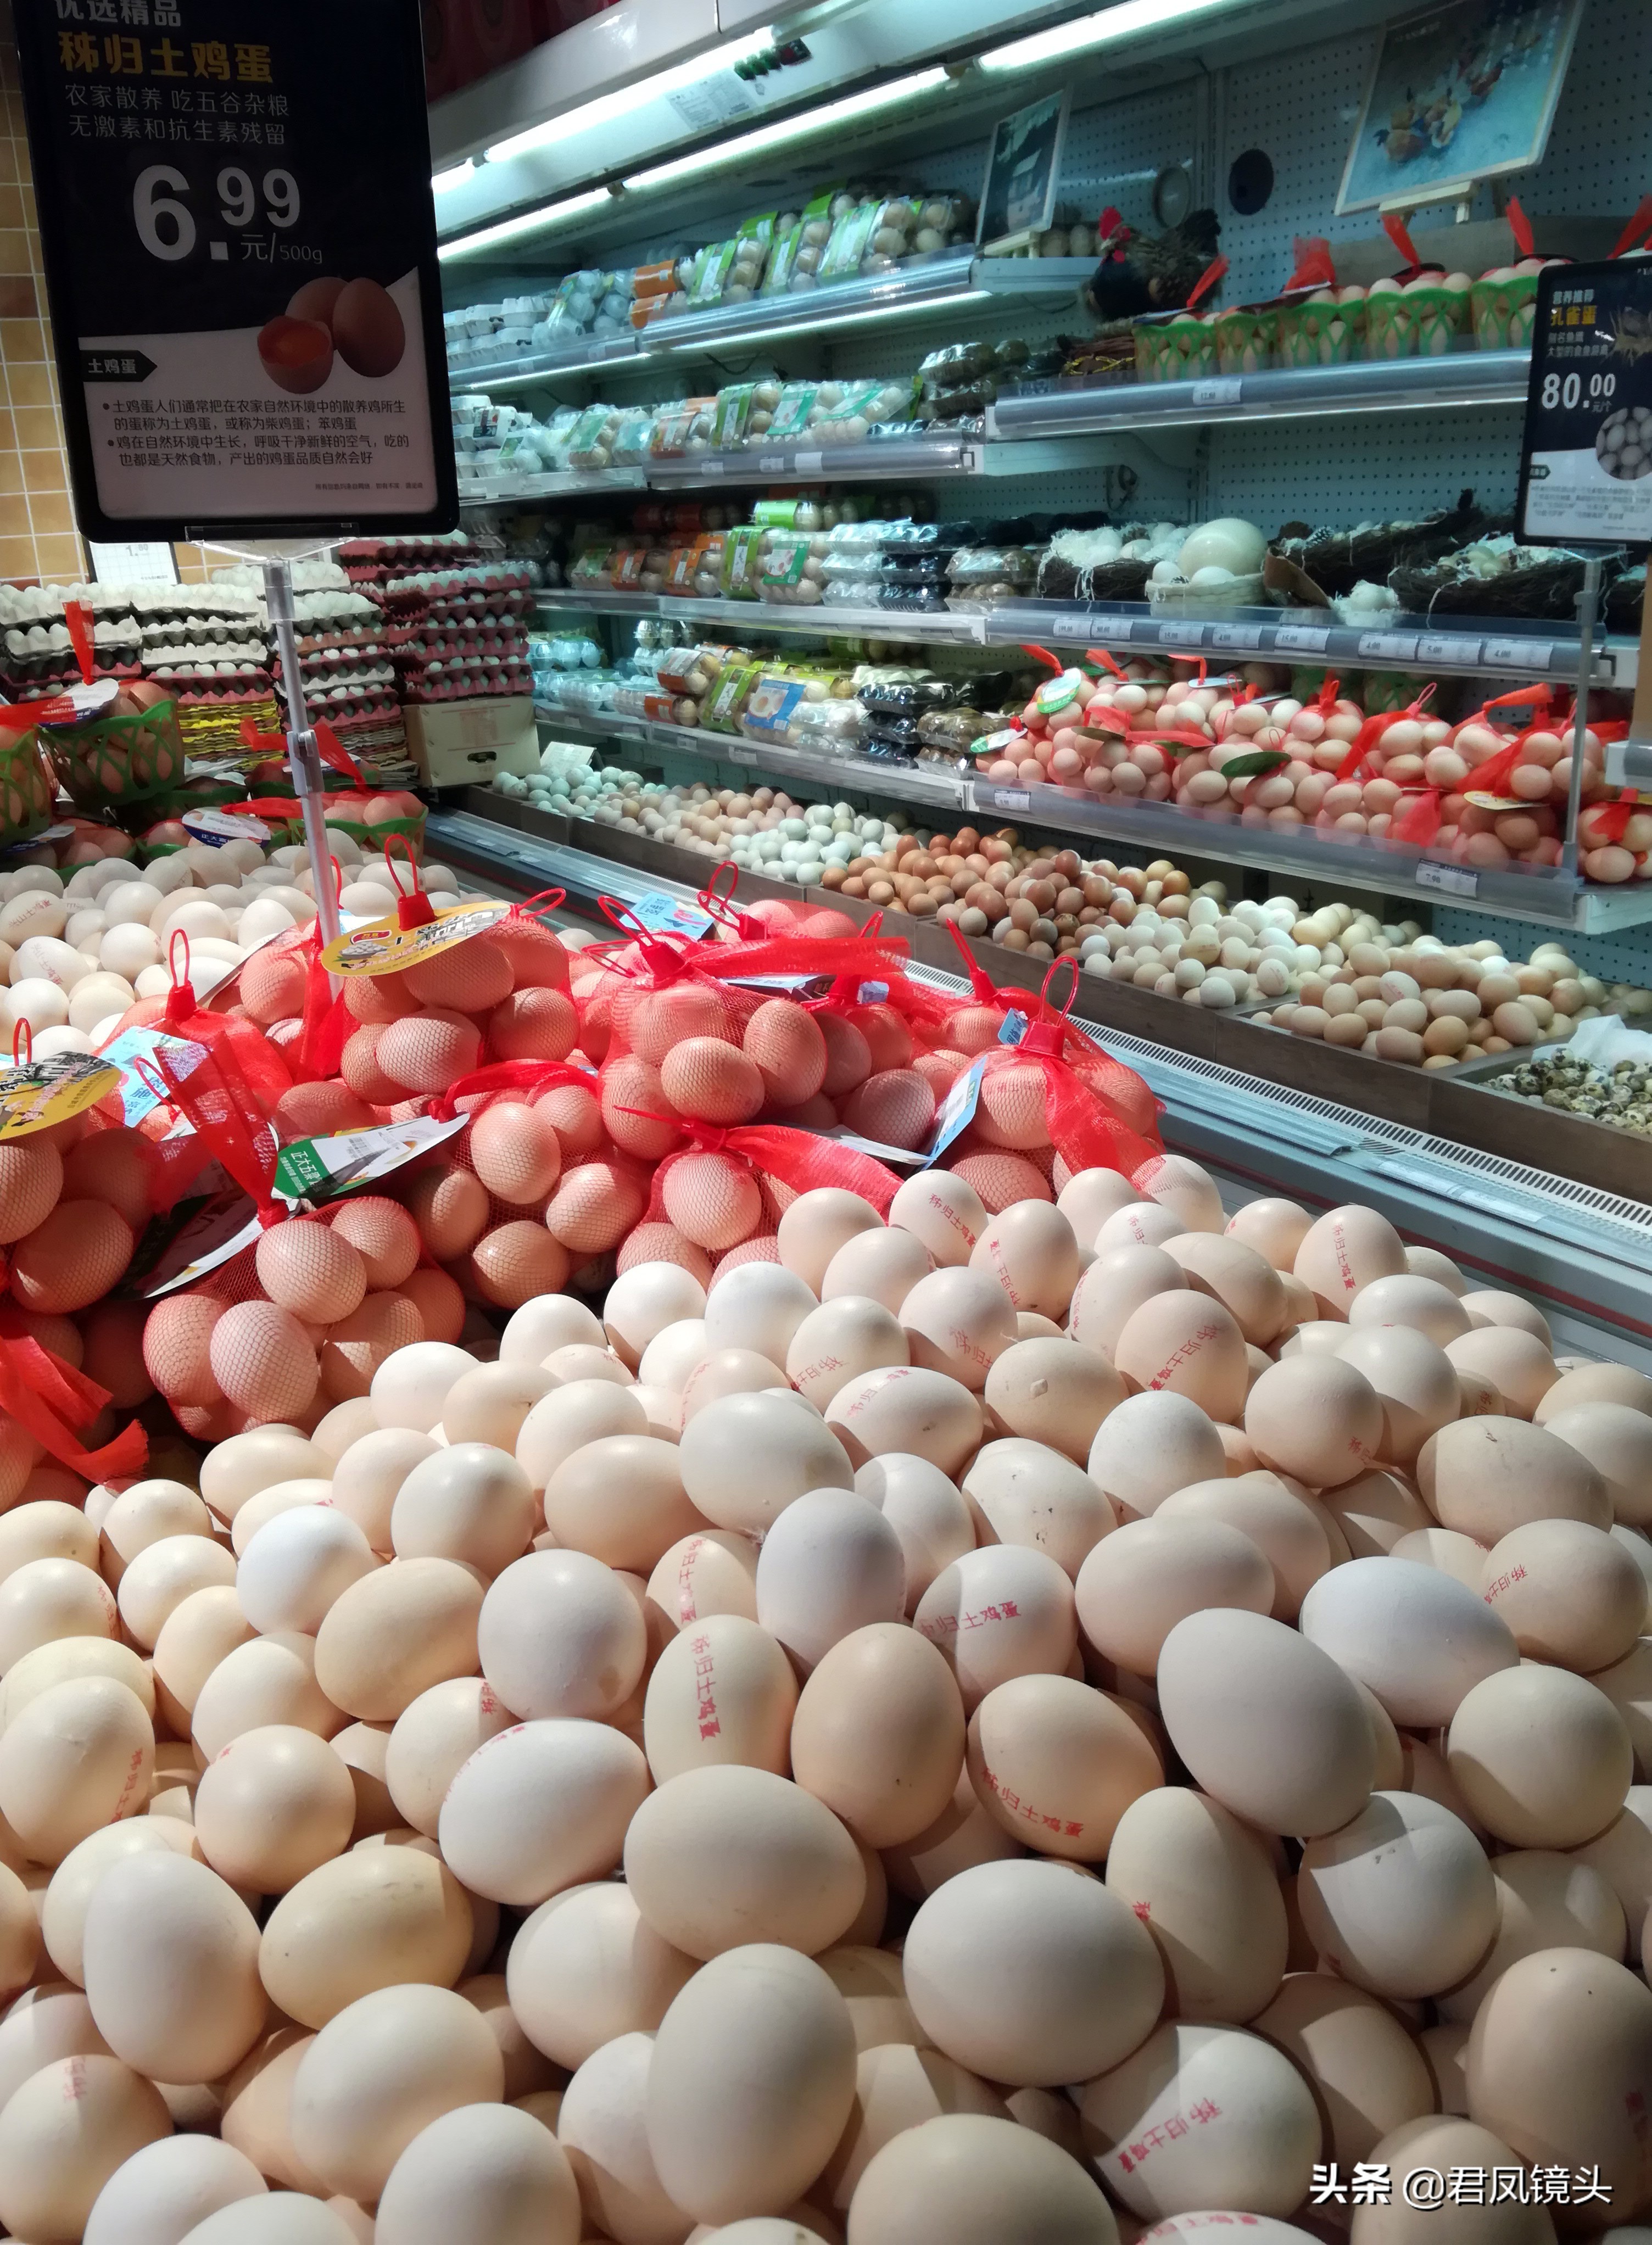 湖北宜昌:超市蛋品多,鸭蛋85元一斤,土鸡蛋价格高低不等